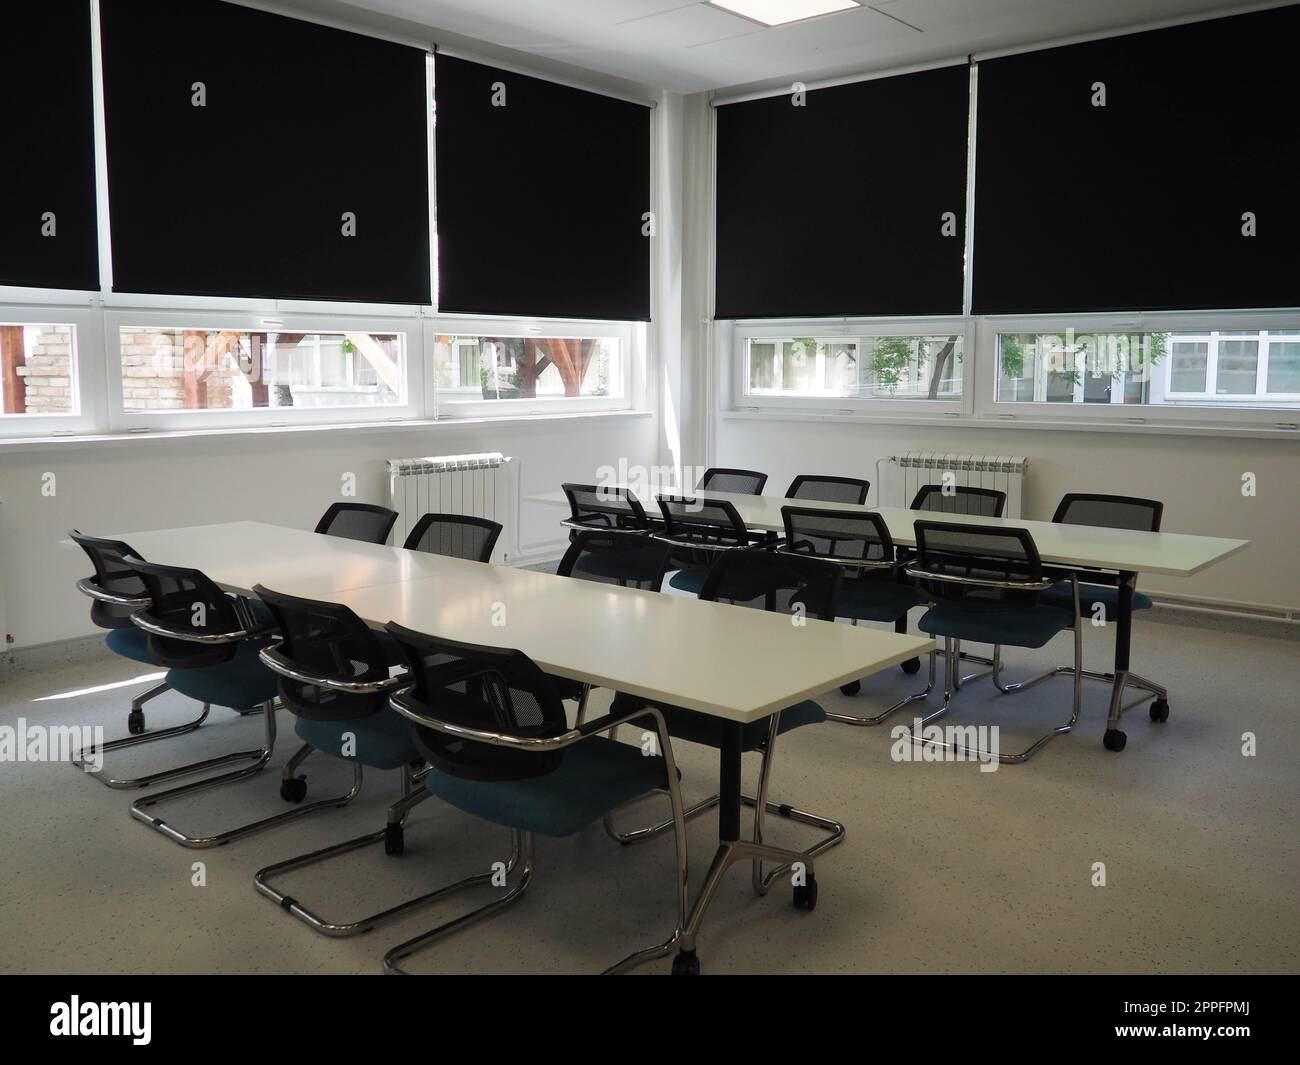 table et chaises dans la salle de réunion dans le bureau, dans la salle de classe ou dans la salle de bibliothèque. Peintures blanches, noires et grises à l'intérieur. Stores noirs pour obscurcir la pièce. Design intérieur moderne Banque D'Images